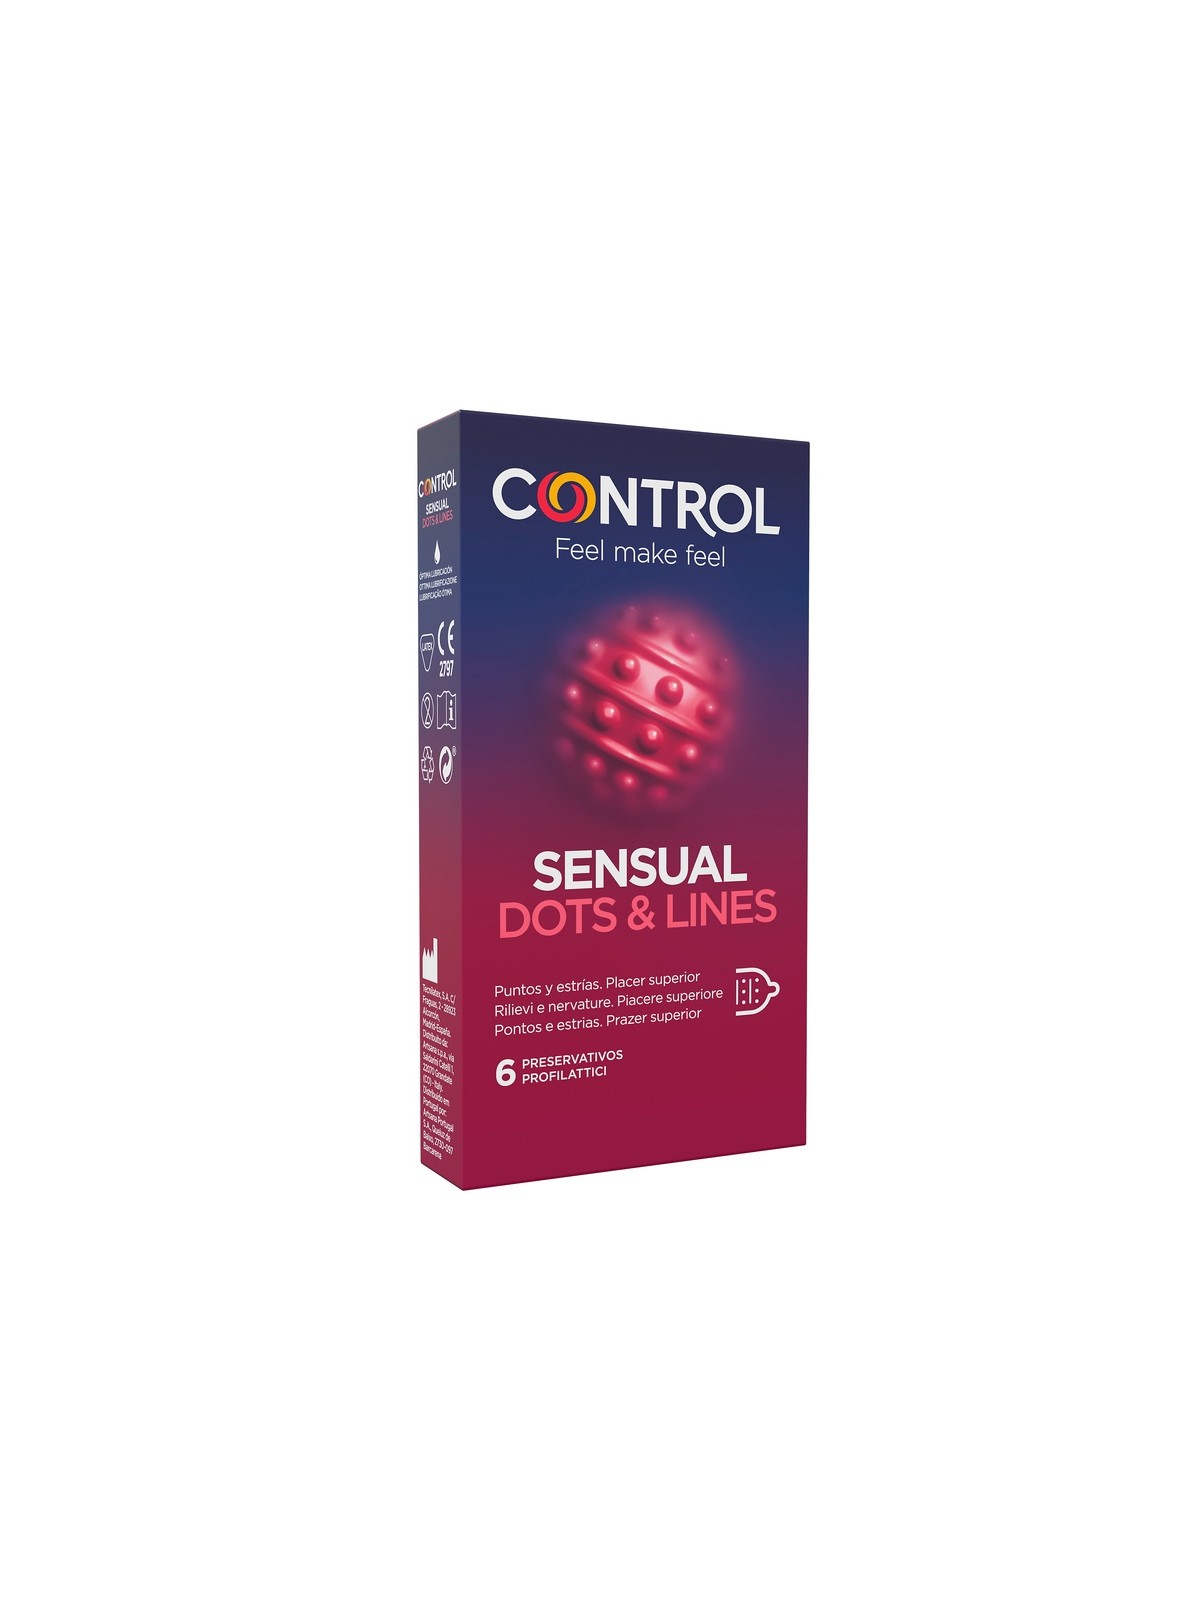 Control Sensual Dots e Lines 6 Preservativi con rilievi e striature